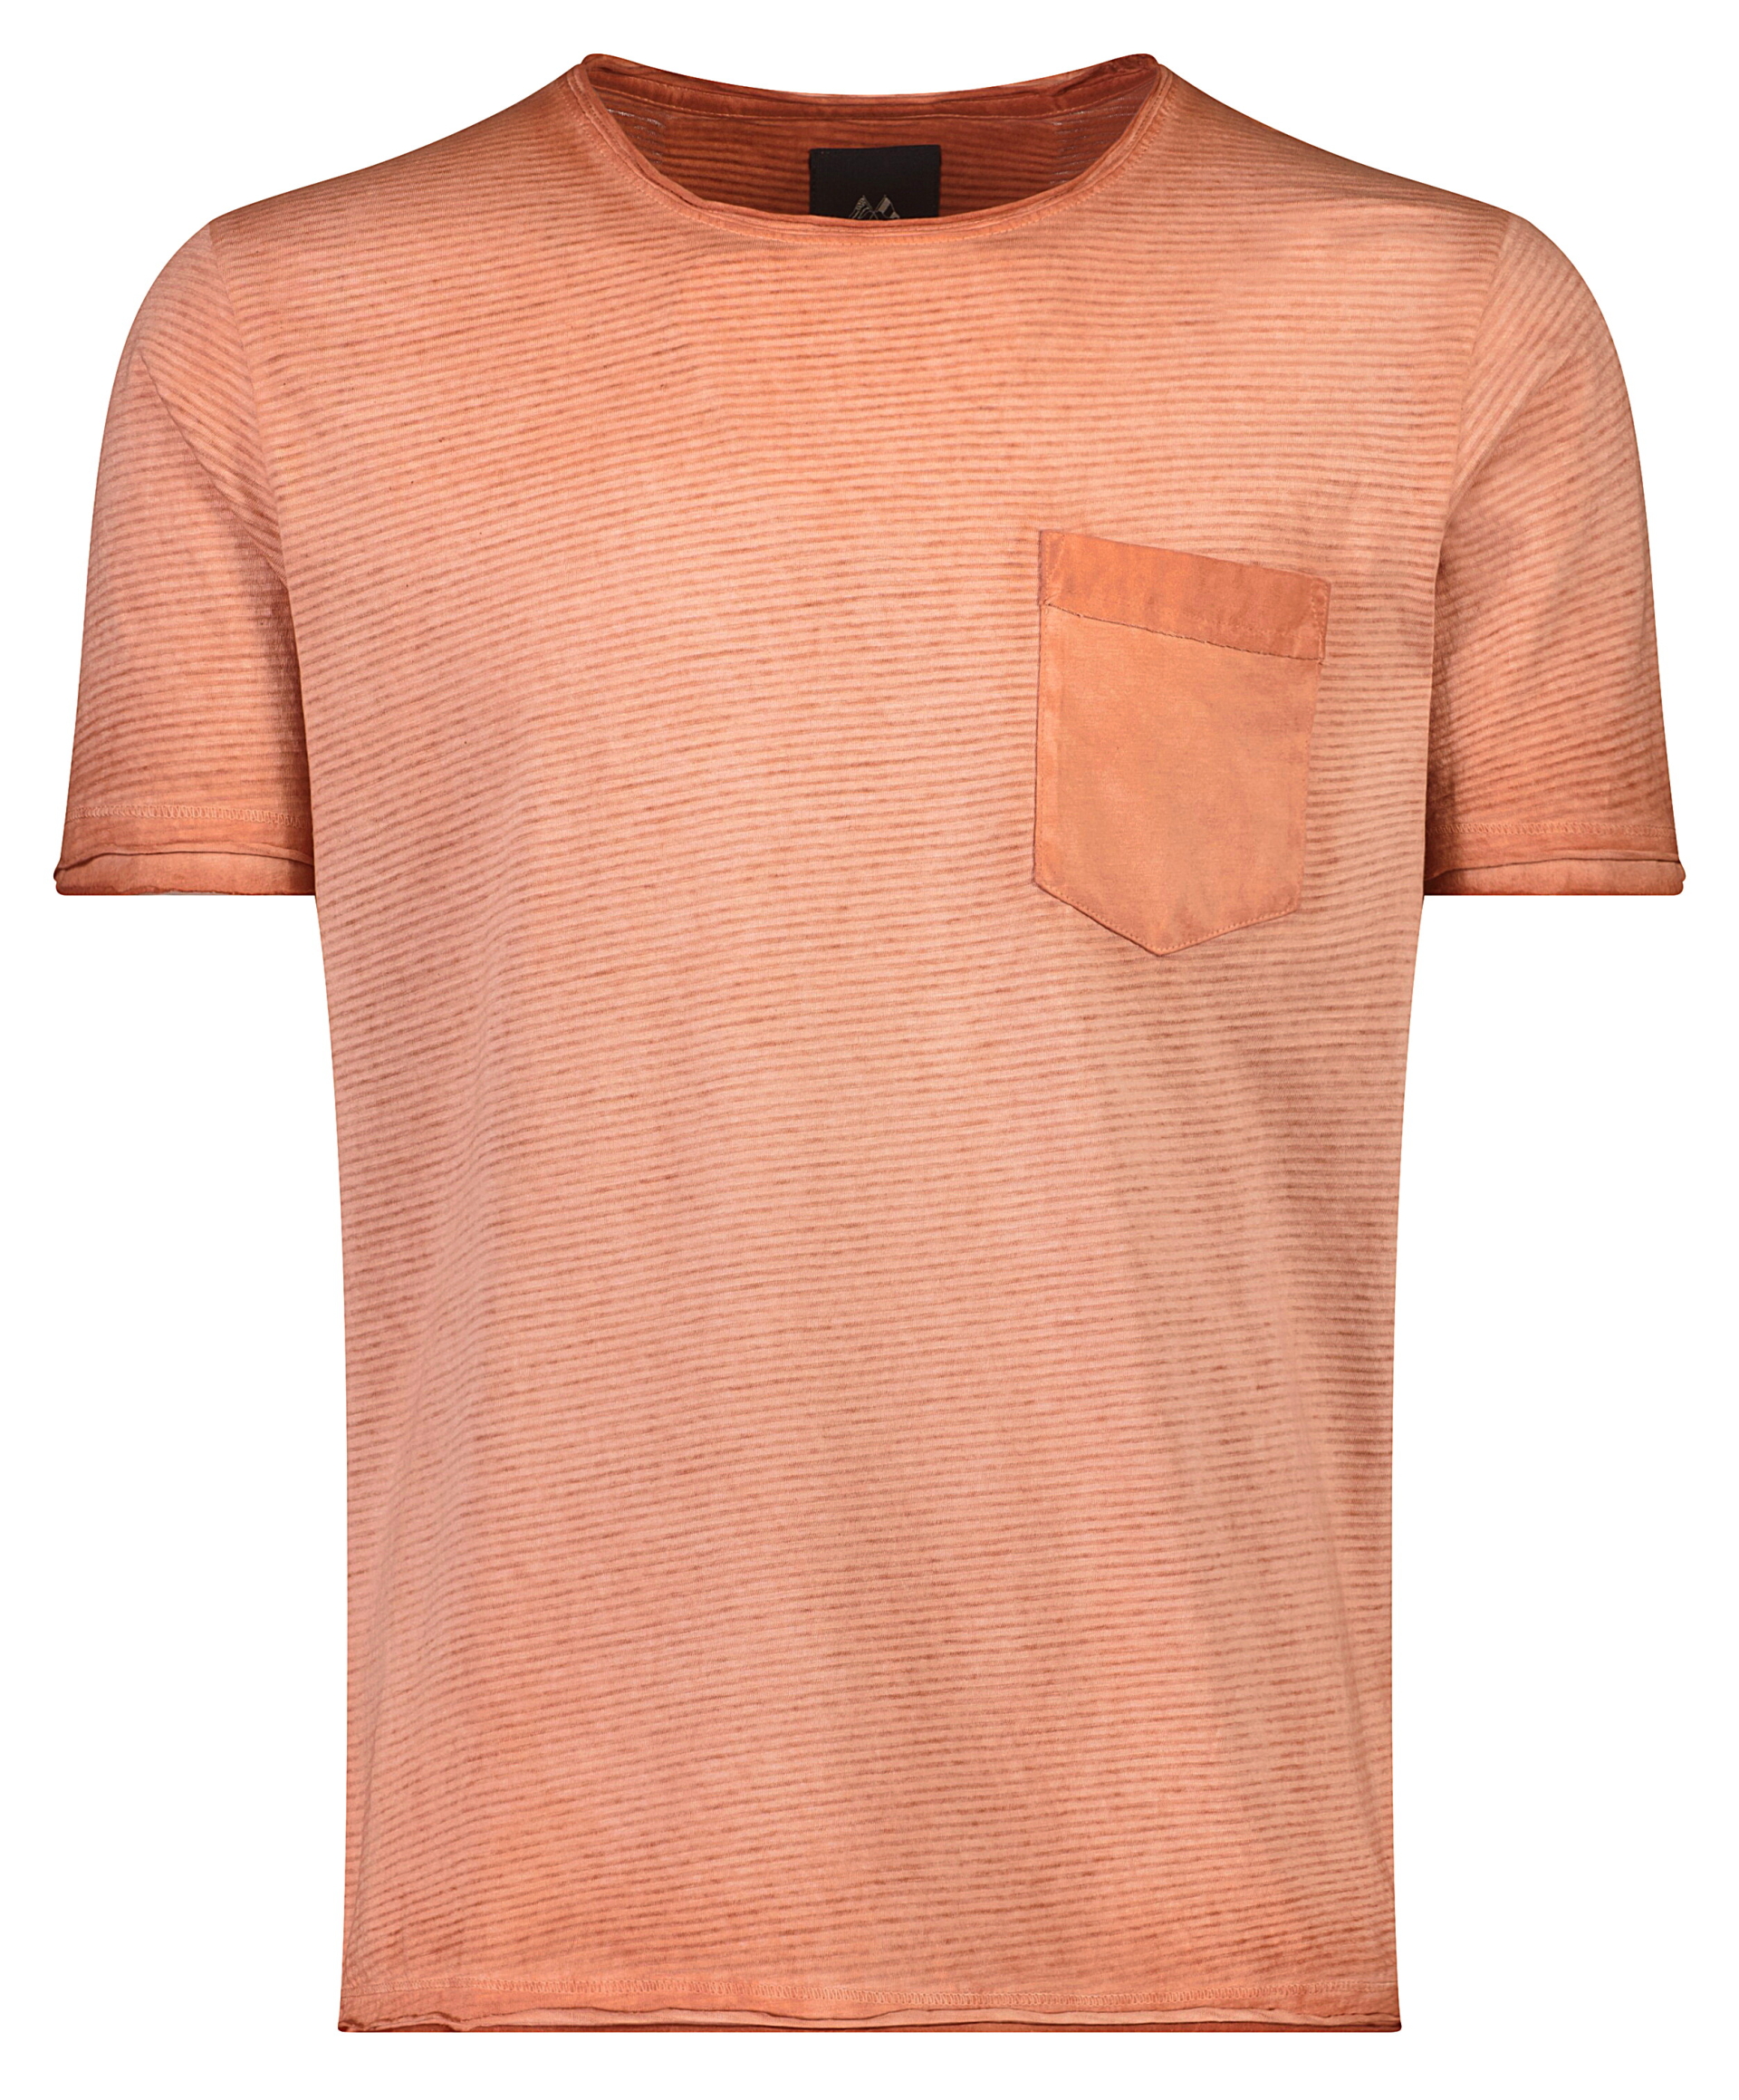 Lindbergh T-shirt orange / dusty orange